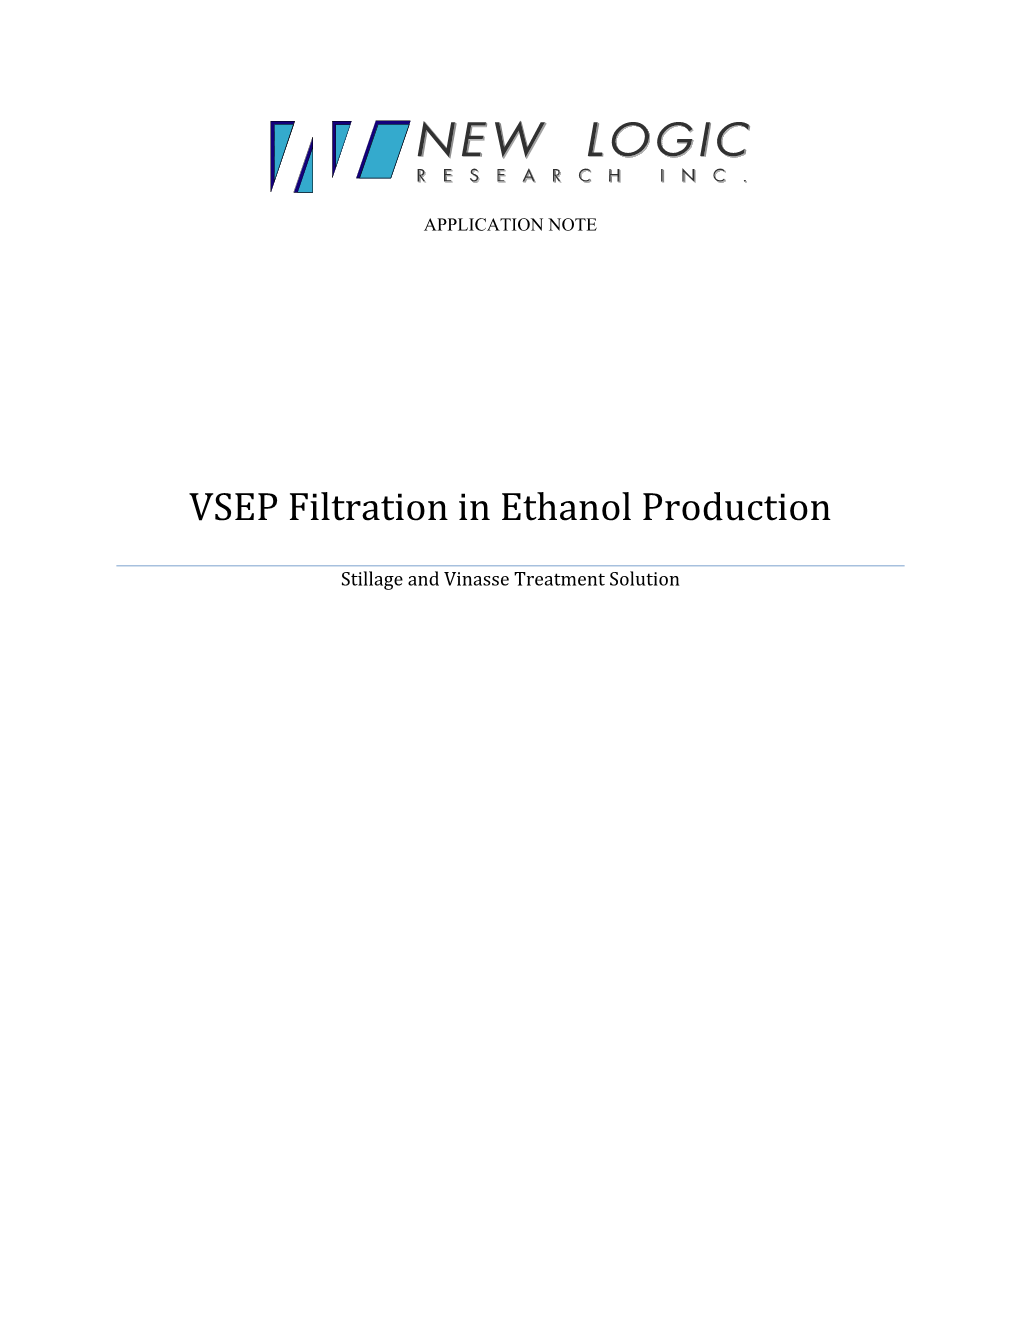 VSEP Filtration in Ethanol Production